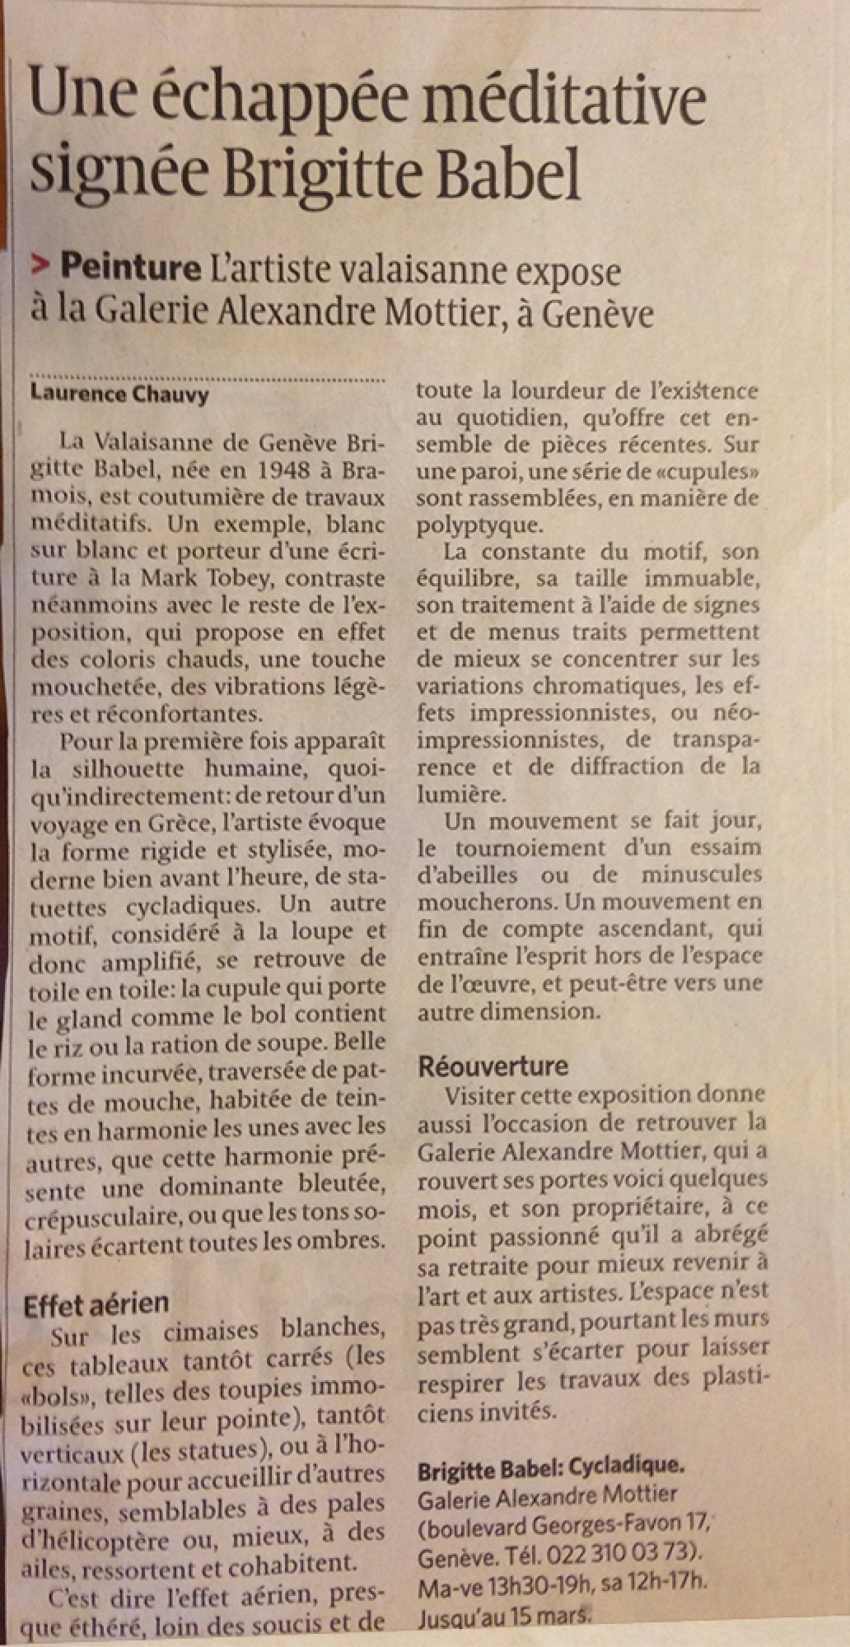 Le Temps - lundi 24 février 2014 - Laurence Chauvy